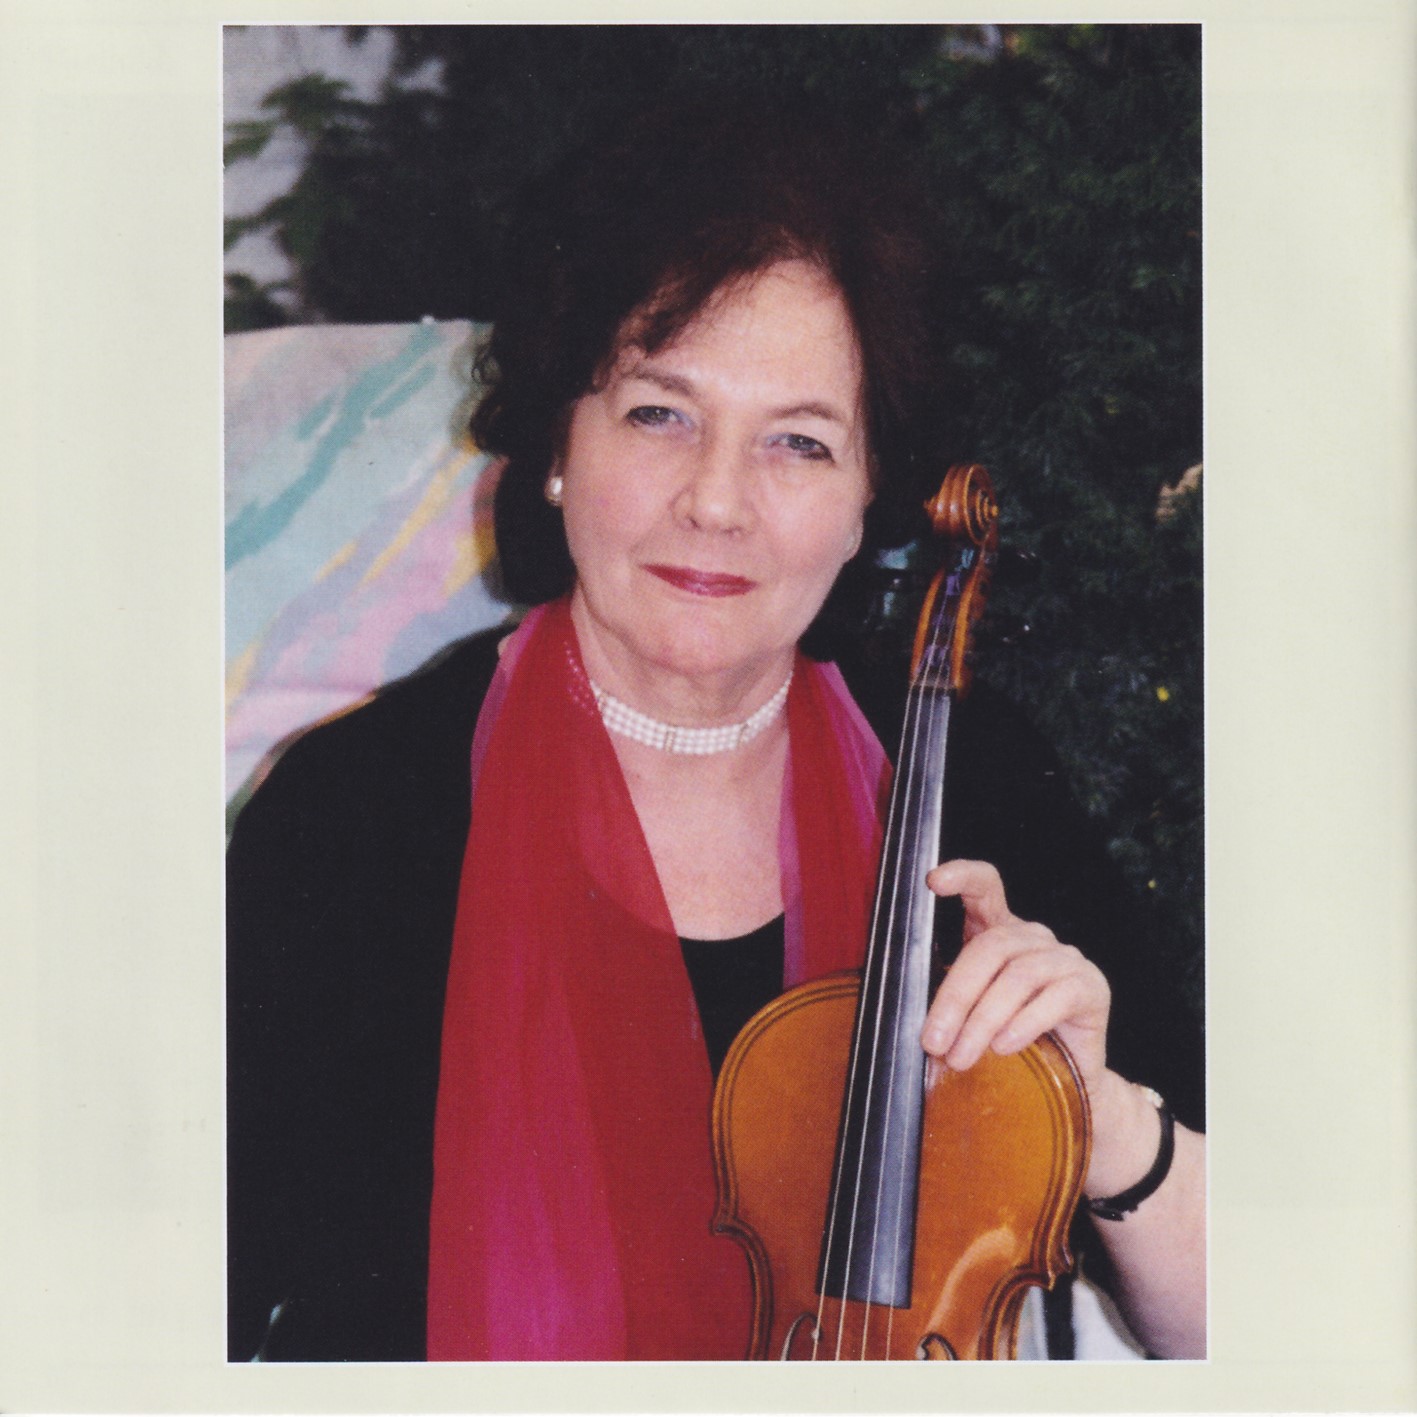 Musikalische Kostbarkeiten für Violine & Harfe